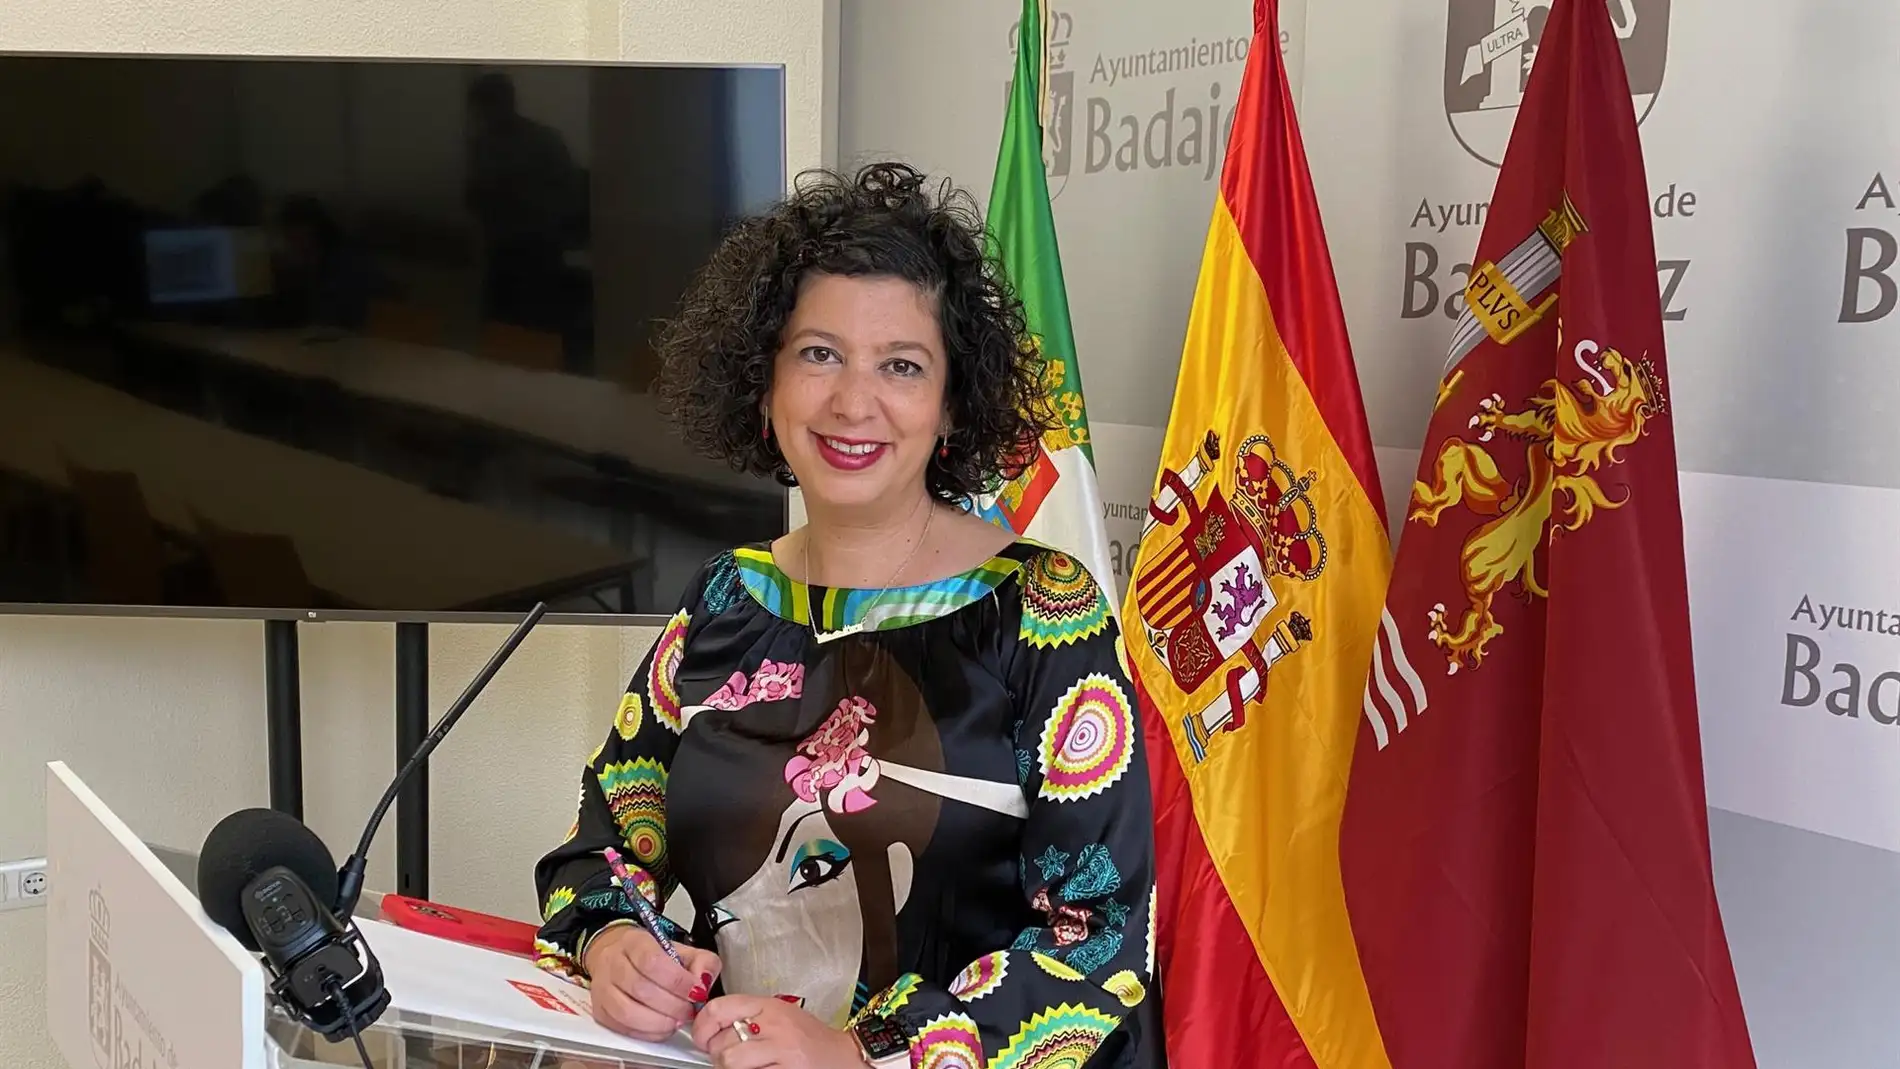 El PSOE local de Badajoz afea al equipo de gobierno en el ayuntamiento que convierta la Agenda Urbana "en mero paripé"